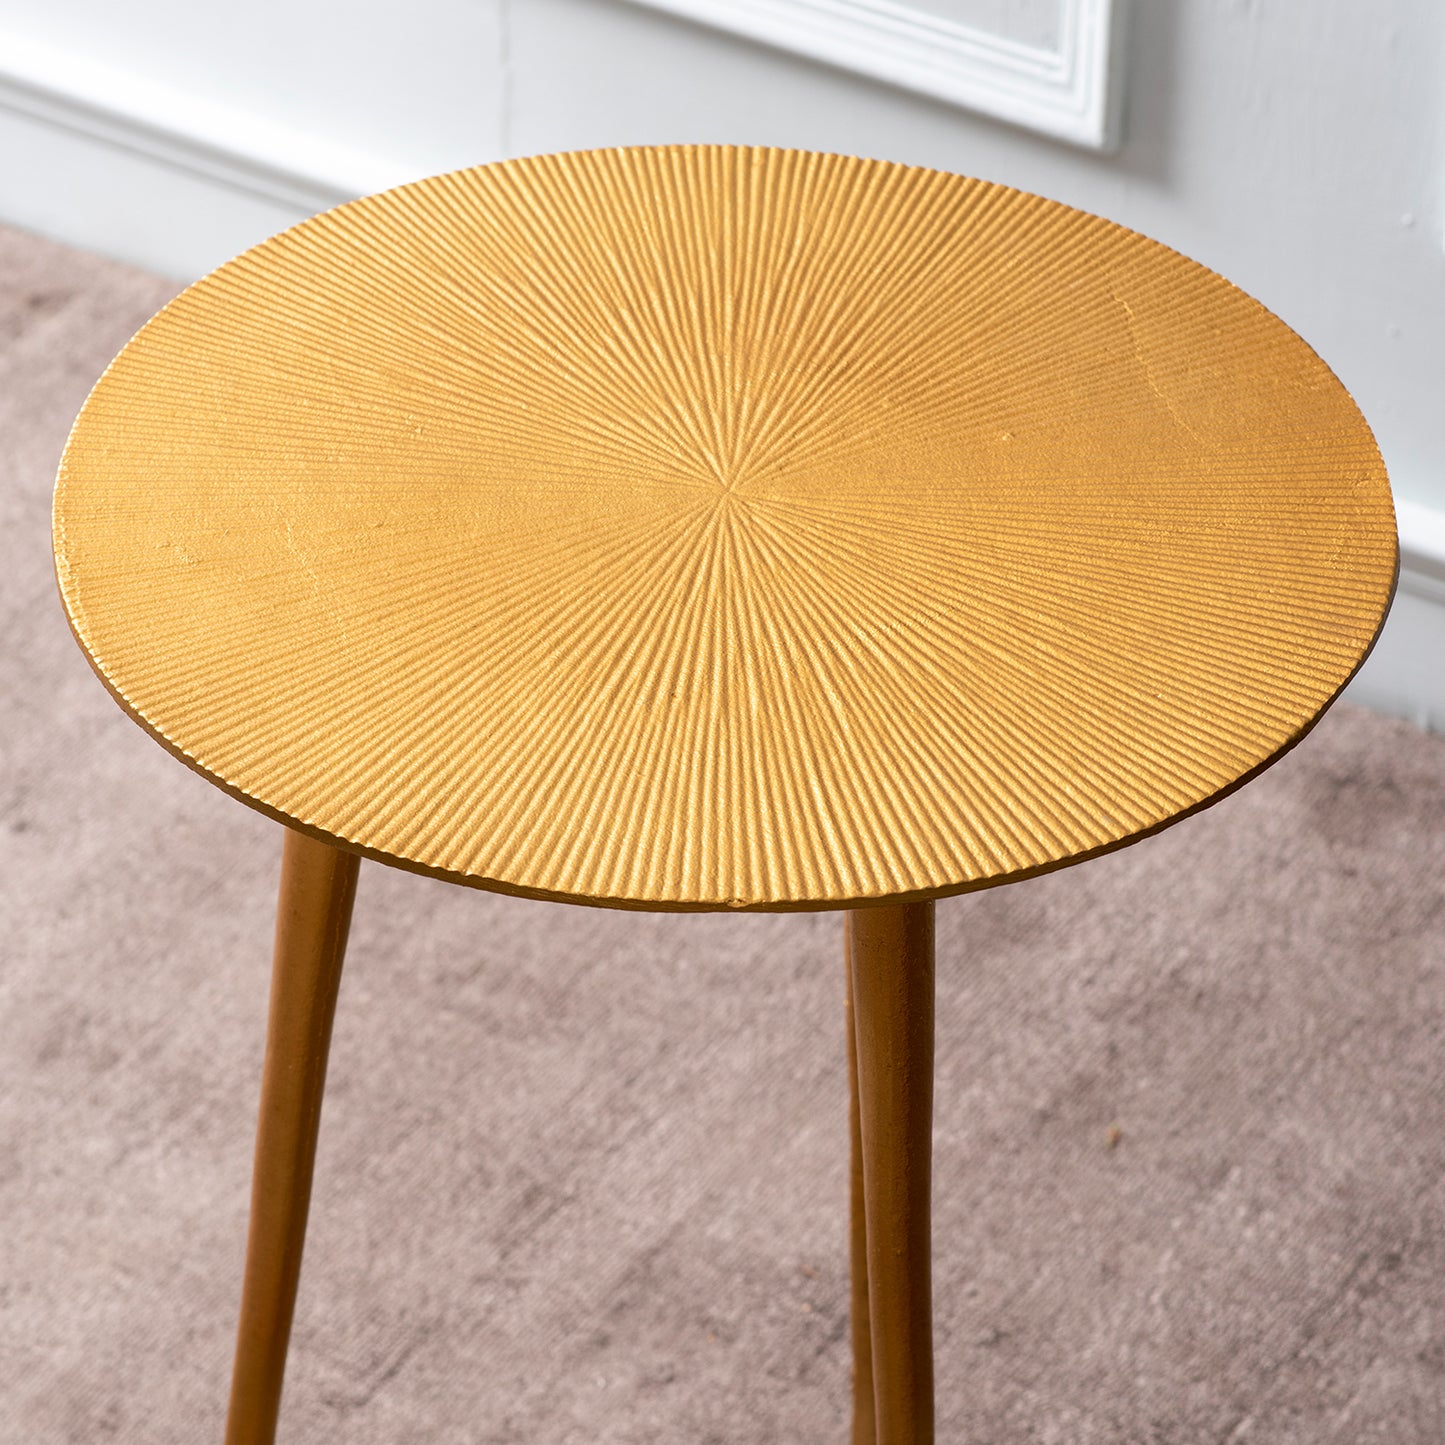 buy designer round aluminium side table